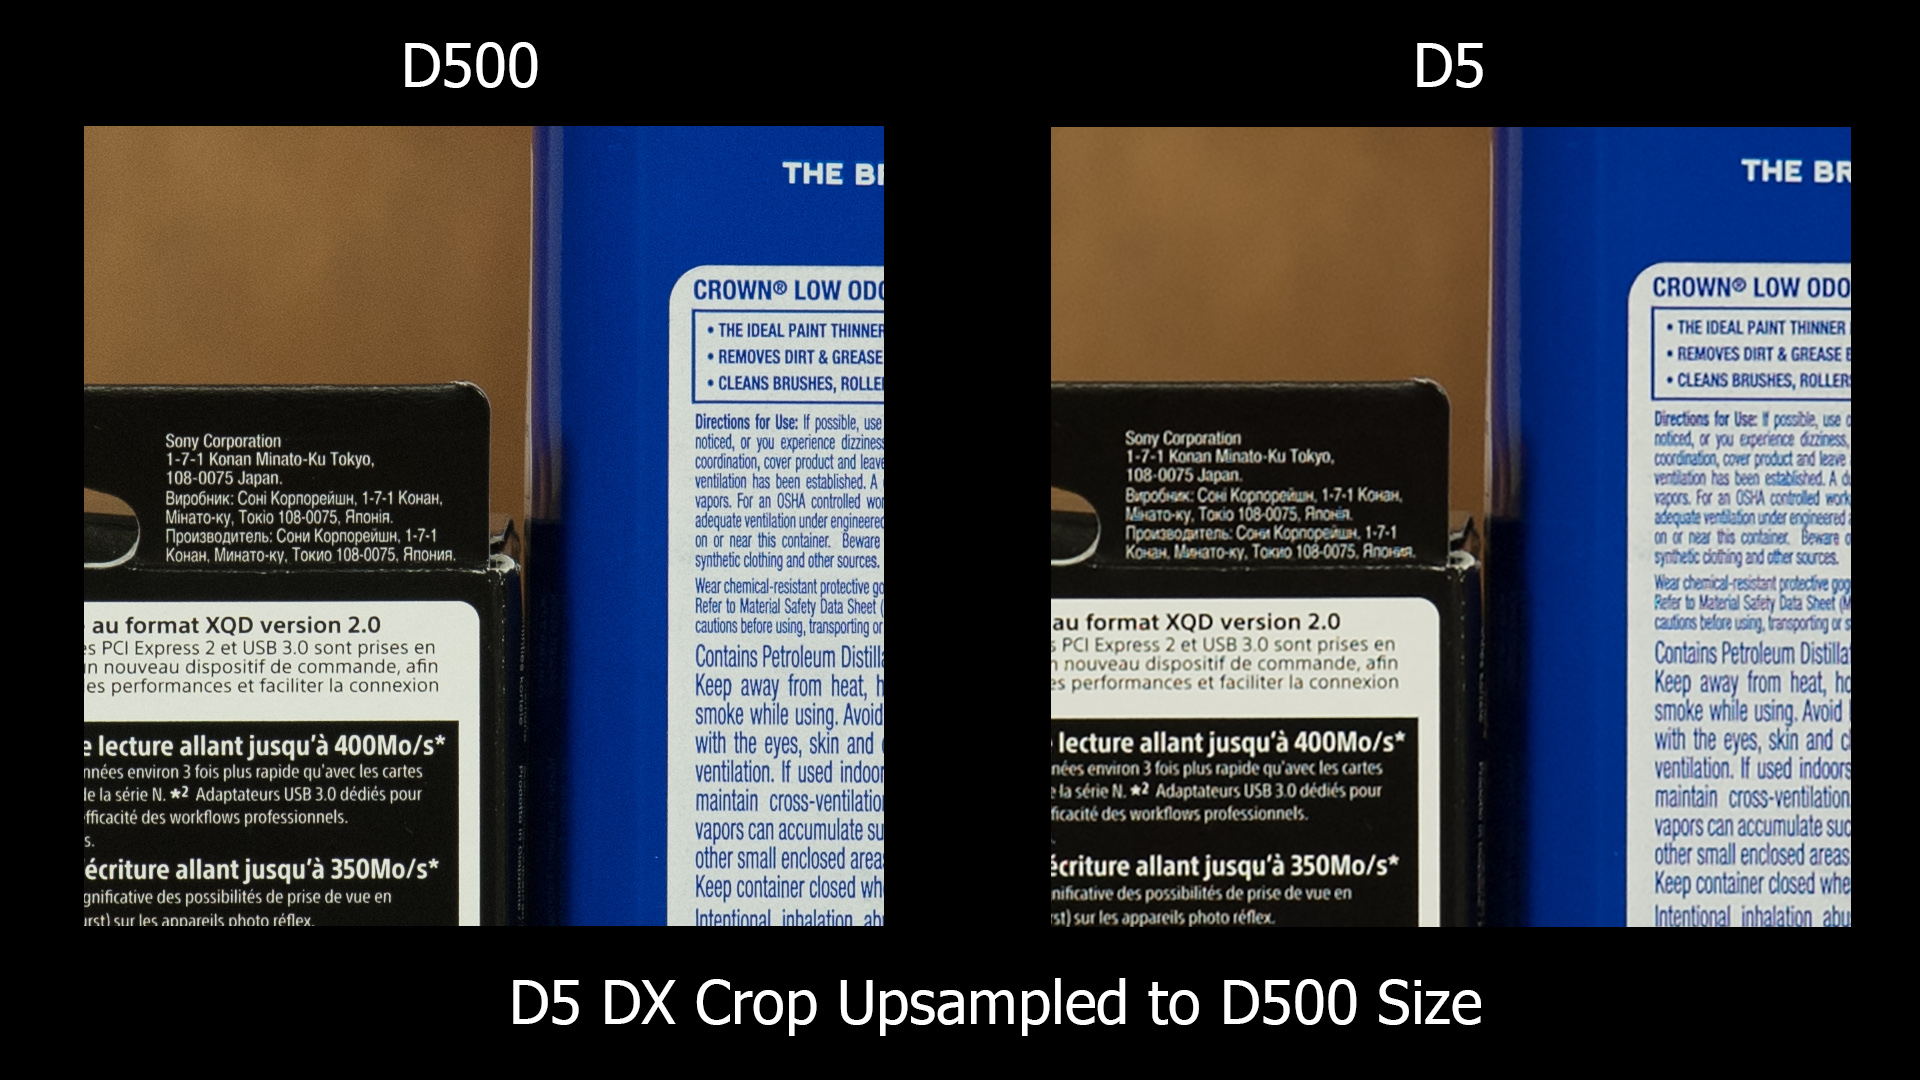 D500 v D5 (upsized)